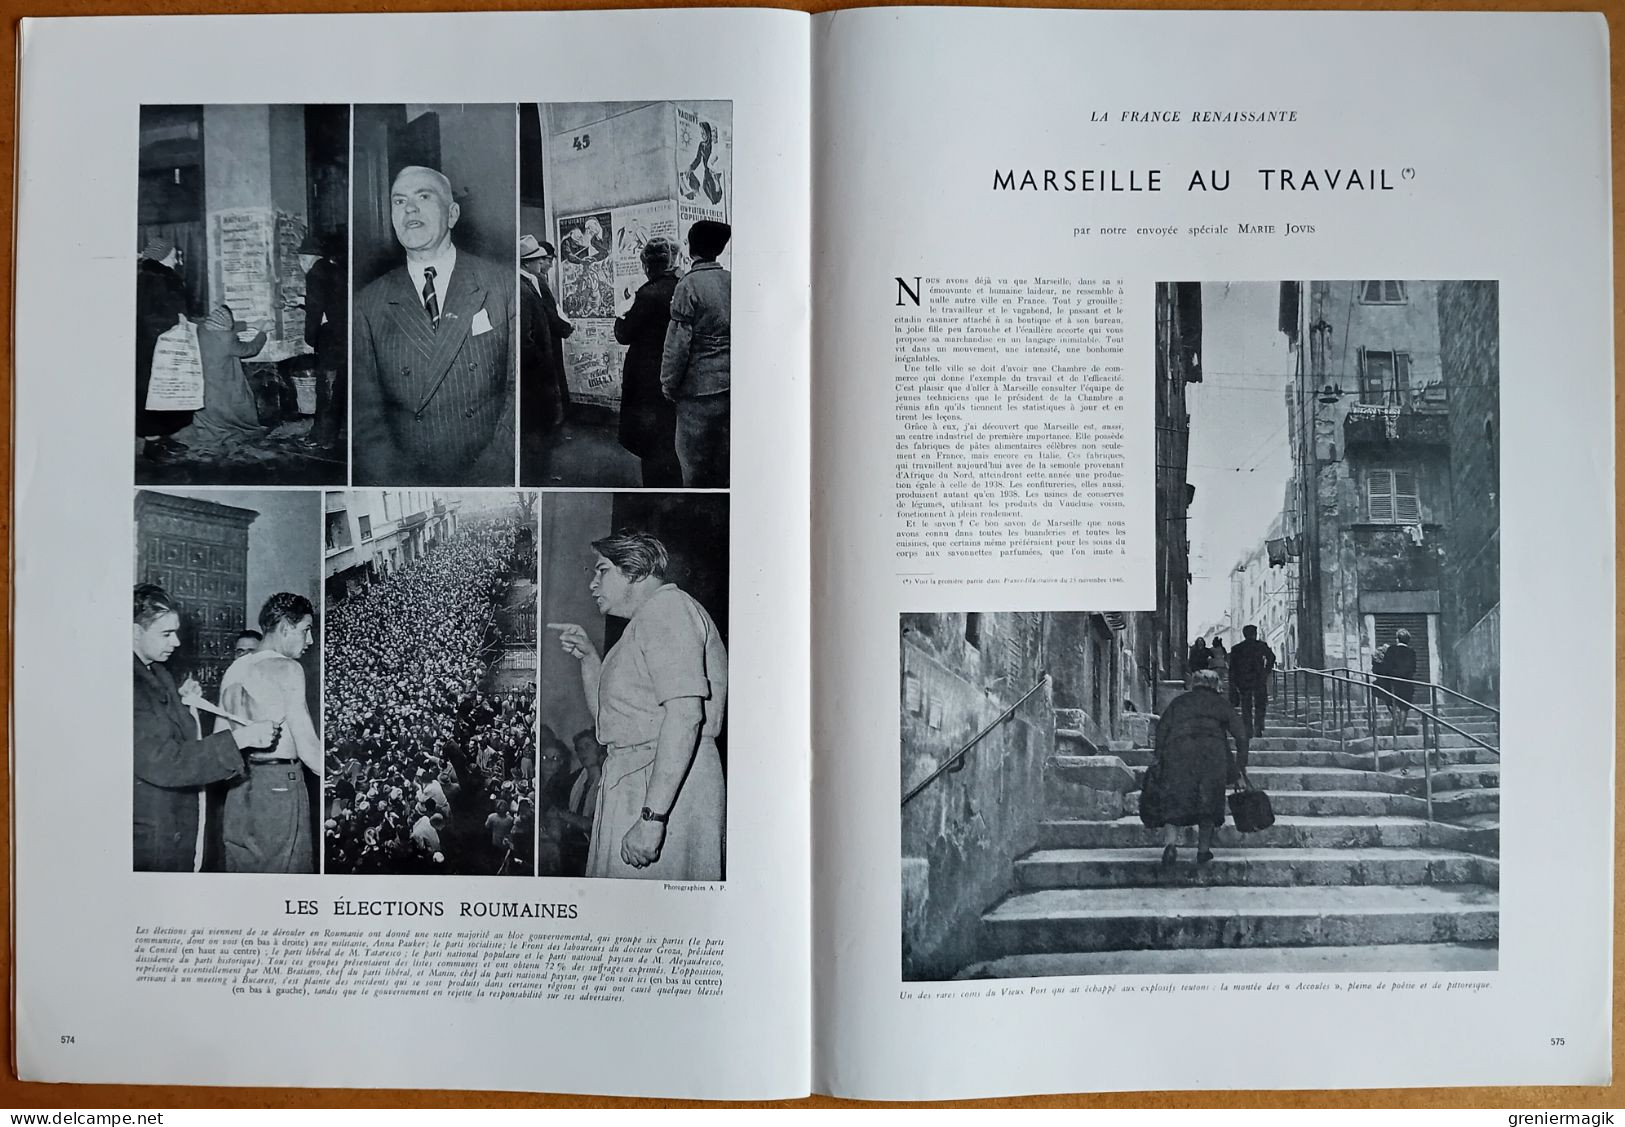 France Illustration N°61 30/11/1946 Coventry/Nettoyage du Golfe de Gascogne/Indes/Exposition d'art moderne/Marseille